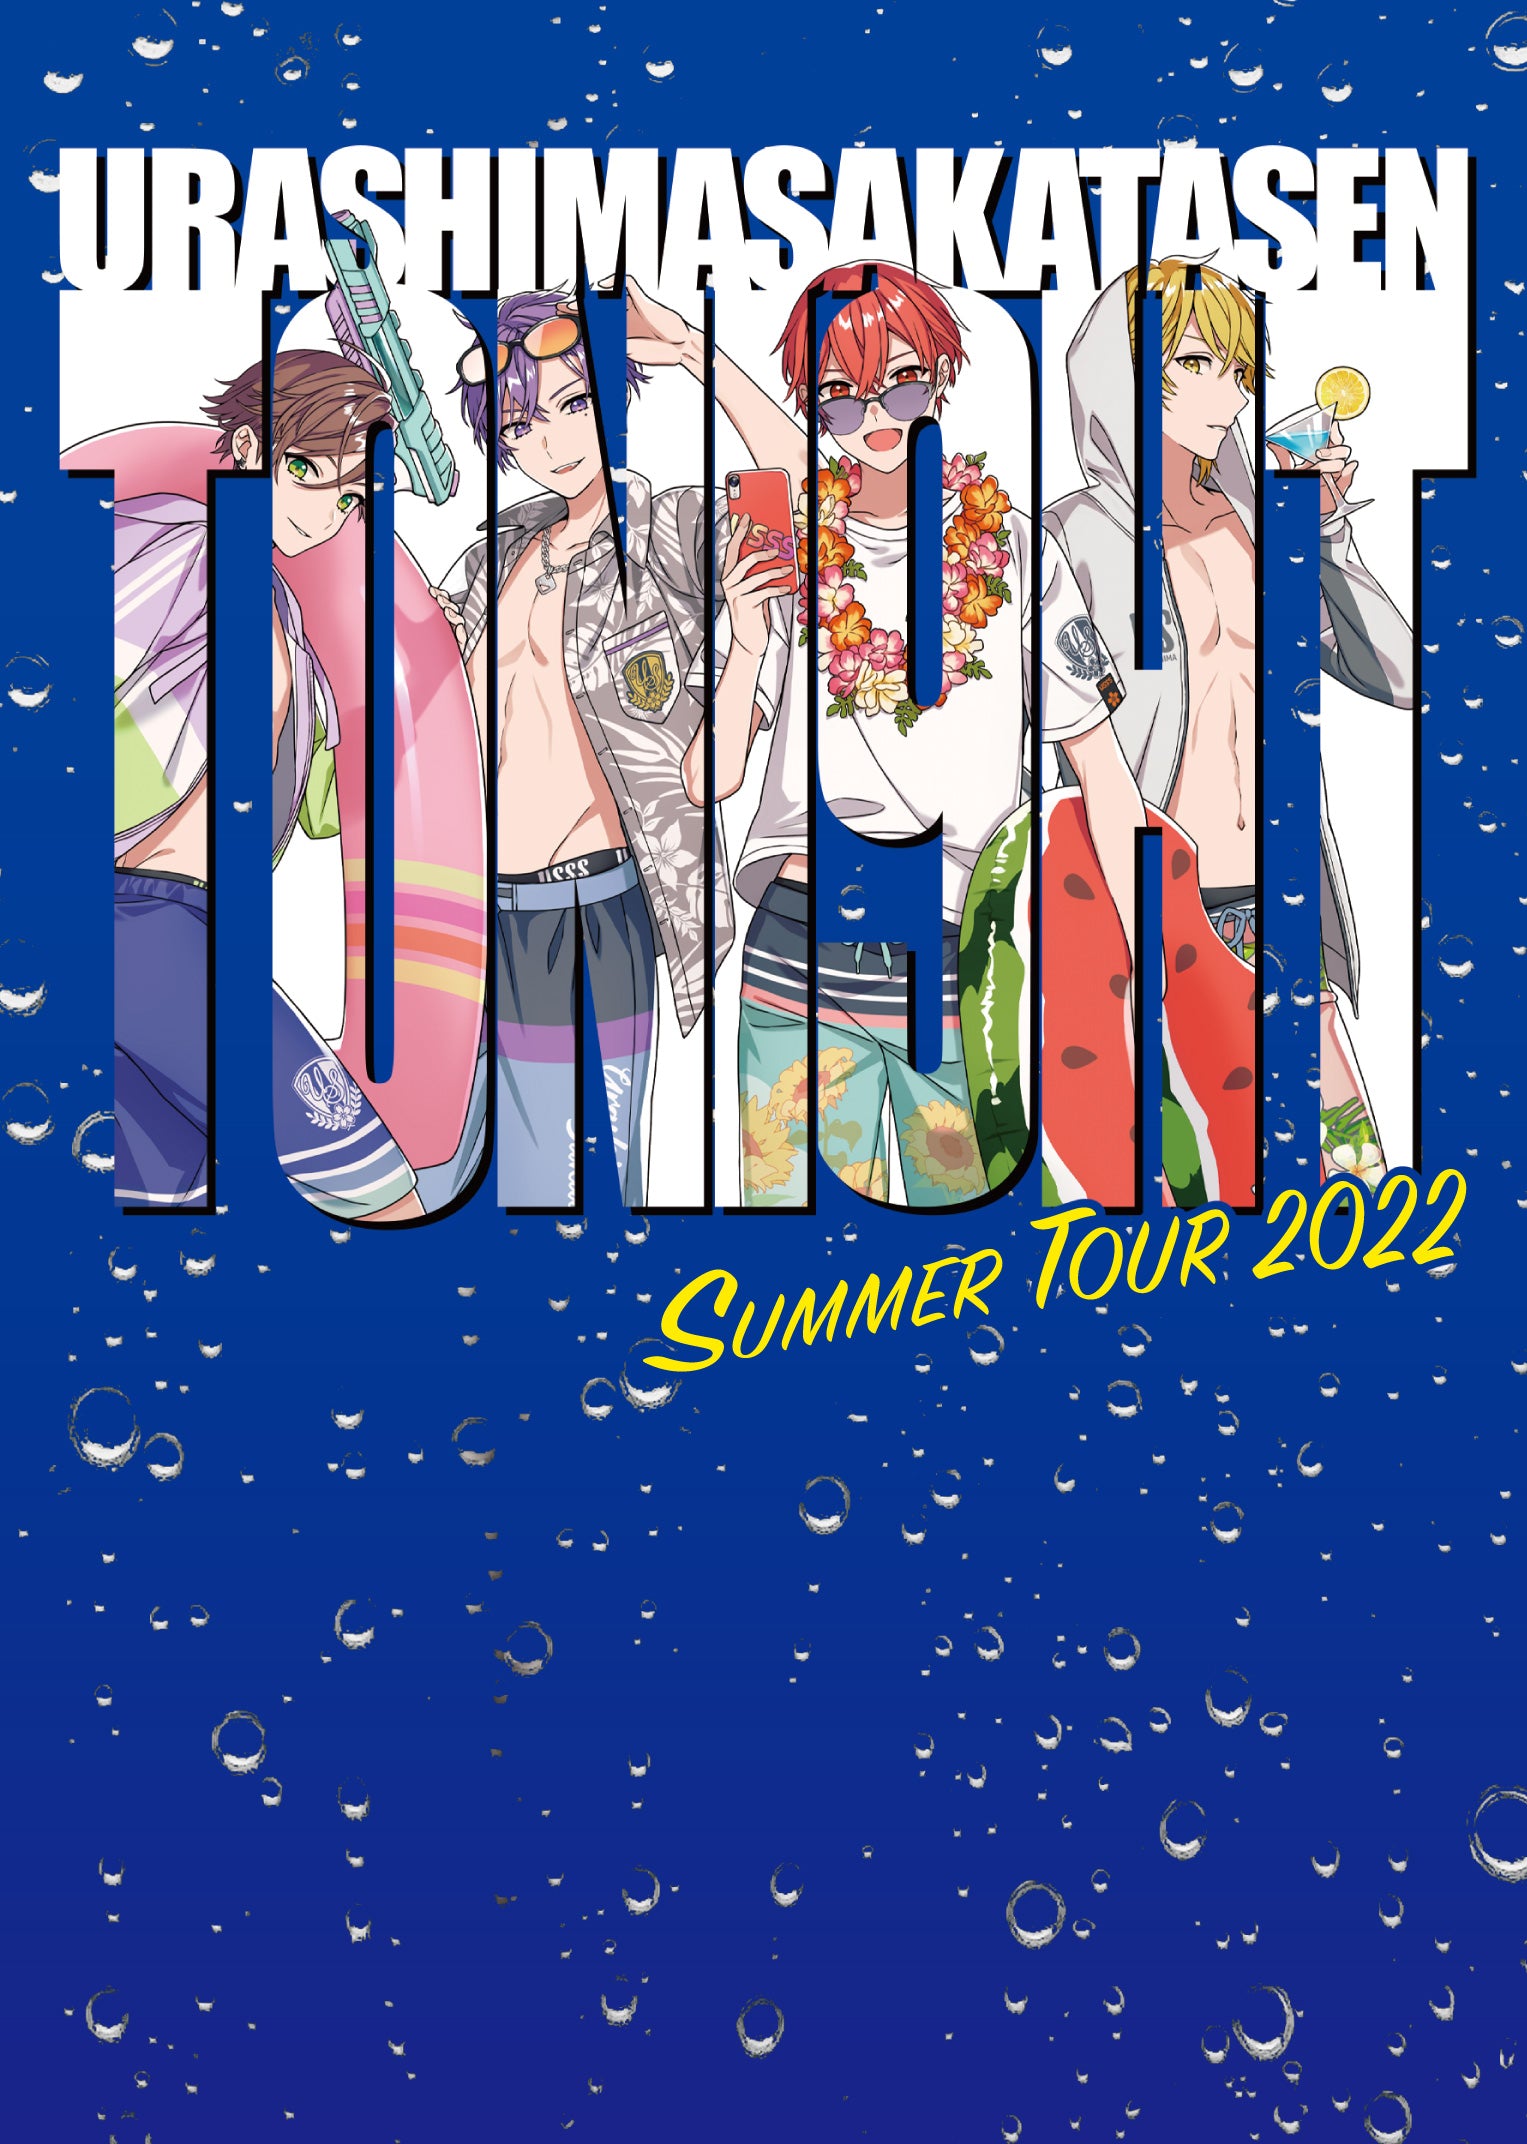 DVD】「浦島坂田船 SUMMER TOUR 2022 Toni9ht」ライブDVD – 浦島坂田船 